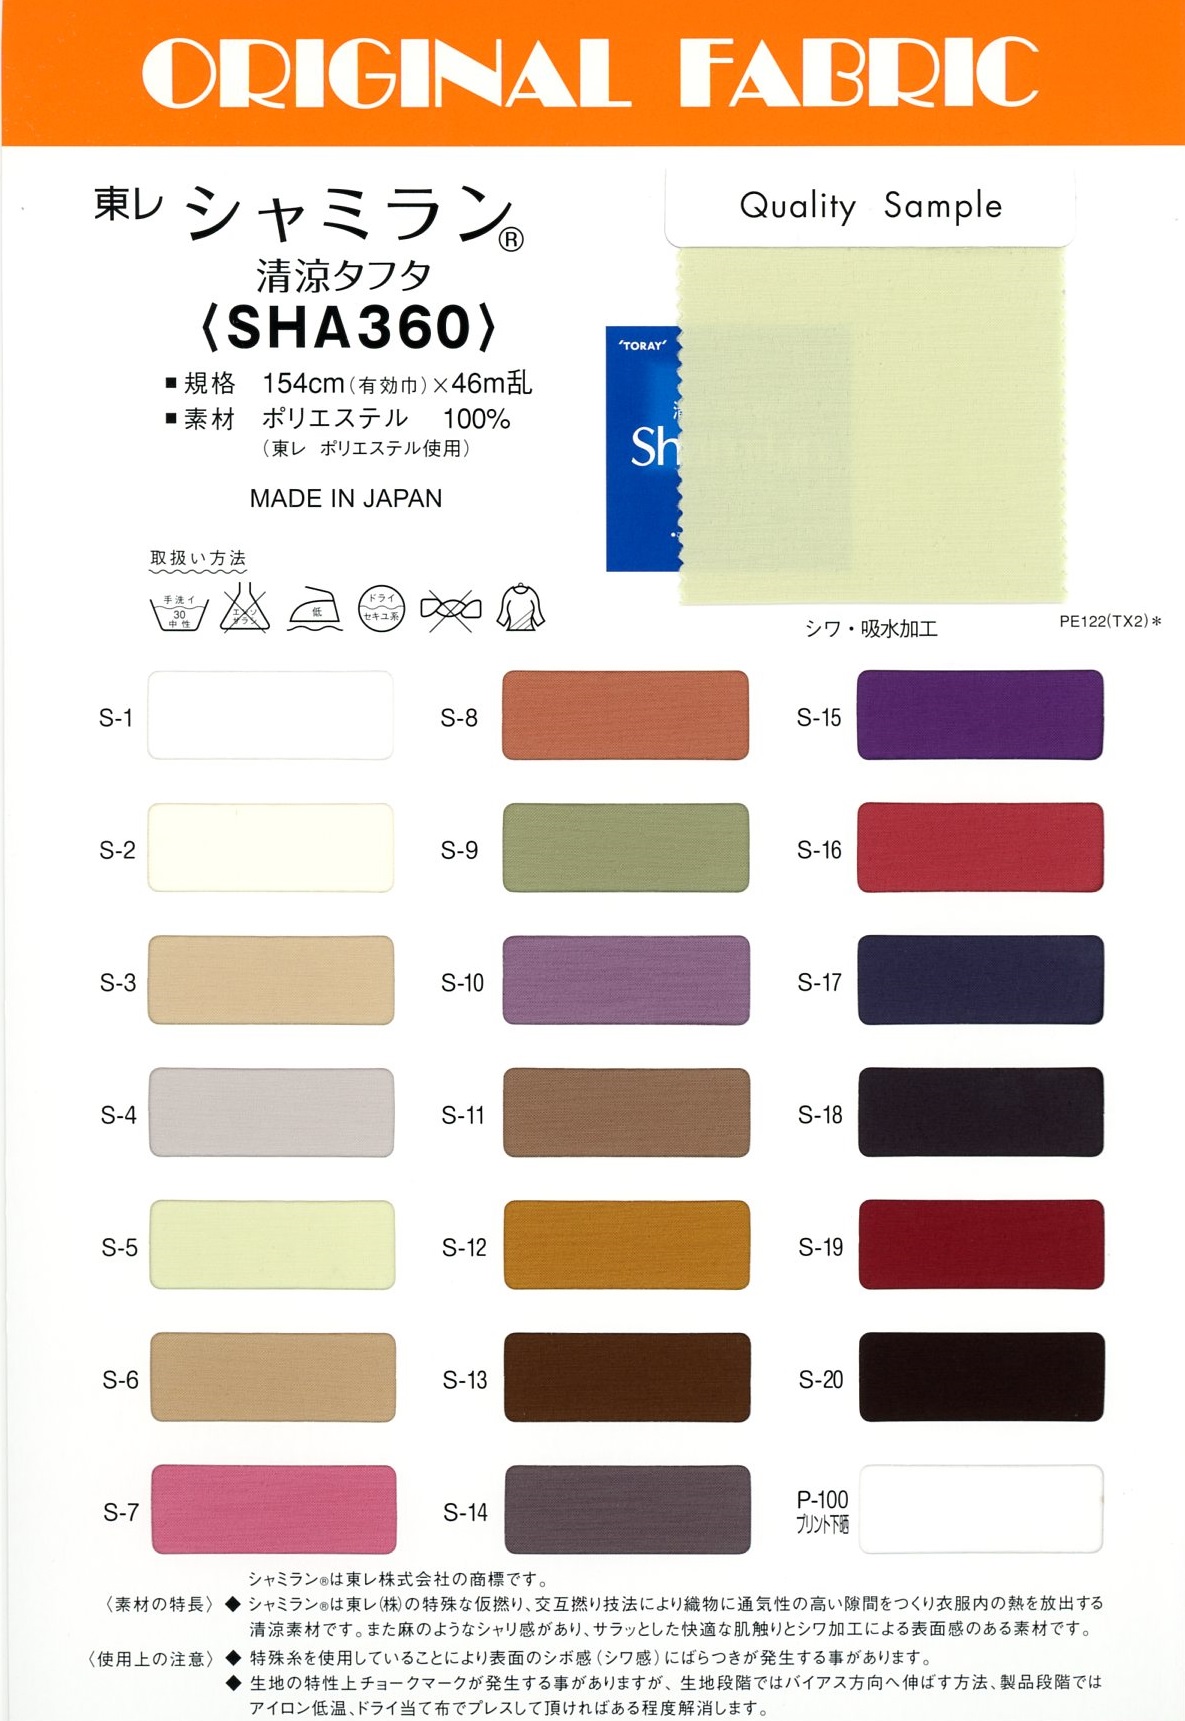 SHA360 Shamiran Refreshing Taffeta[Textile / Fabric] Masuda